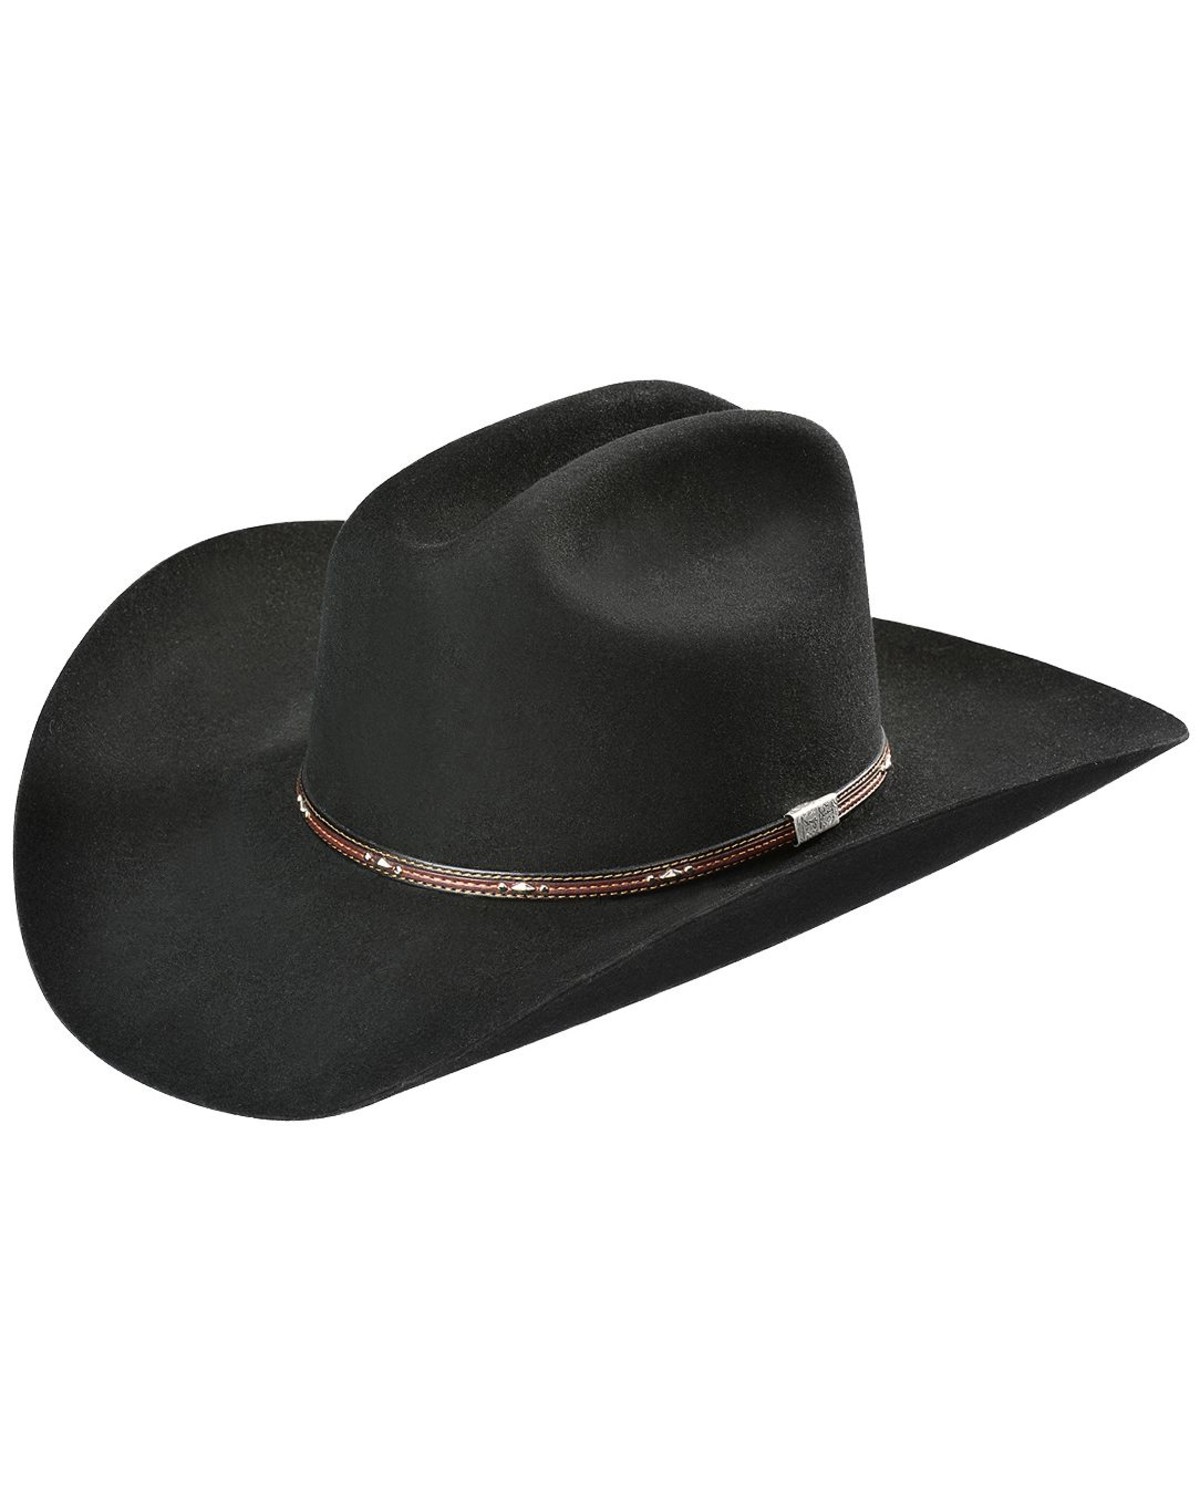 Men's George Strait Cowboy Hats